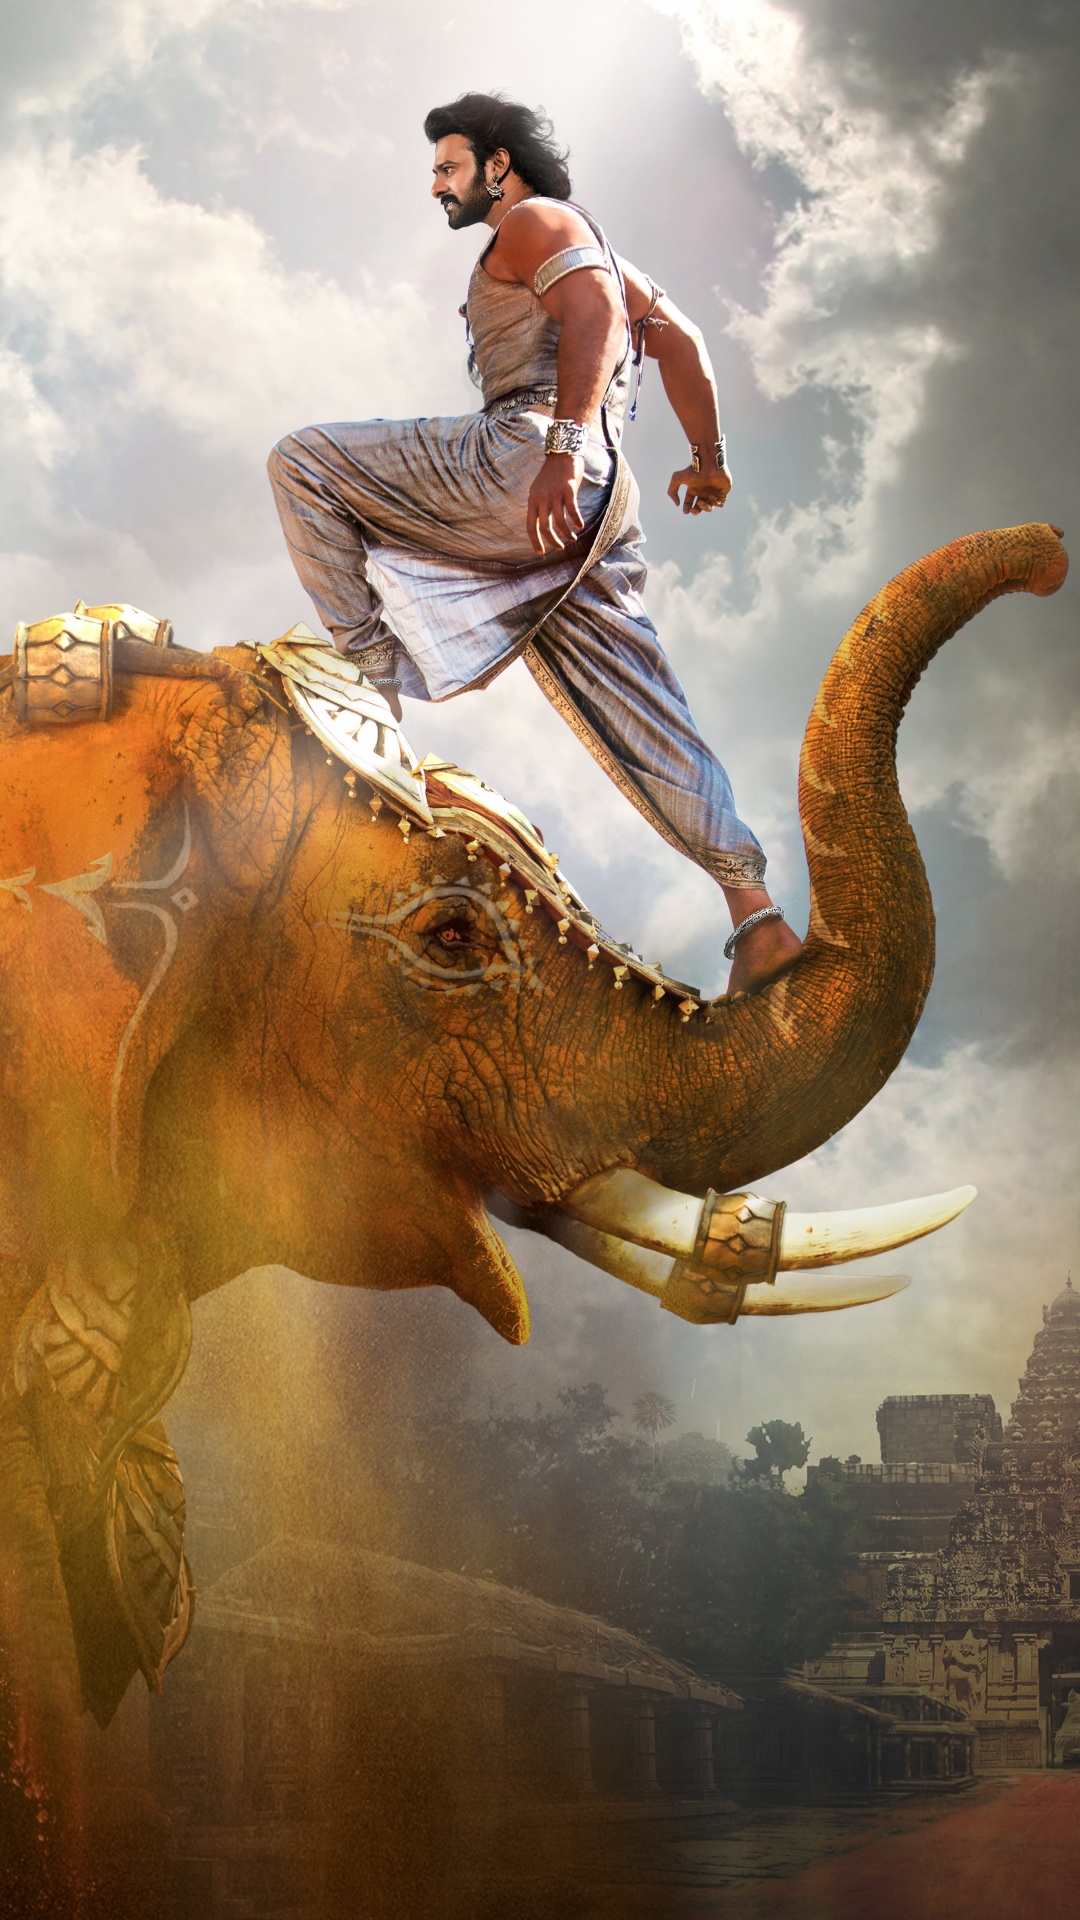 大象和猛犸象, 恐龙, 灭绝, 寺庙, 印度大象 壁纸 1080x1920 允许